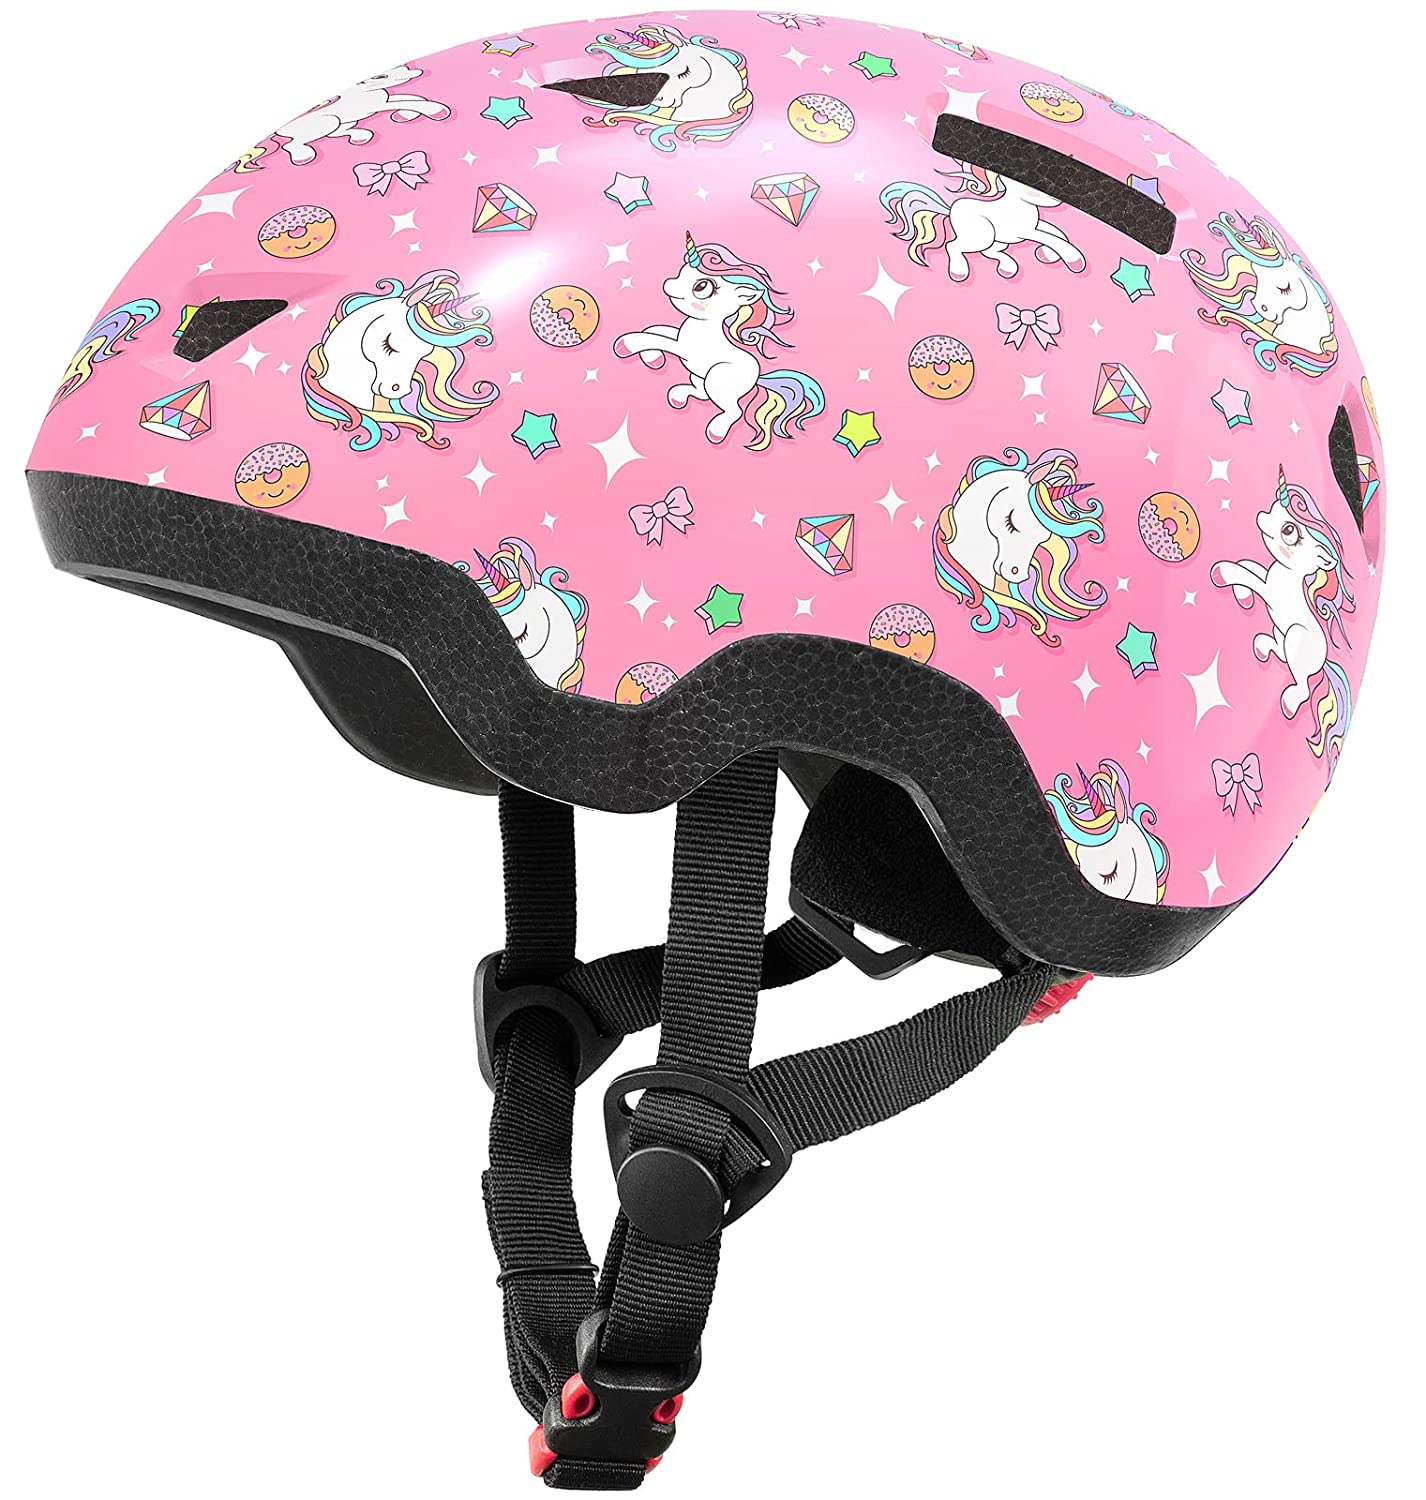 Mountalk Adjustable Bike Helmet